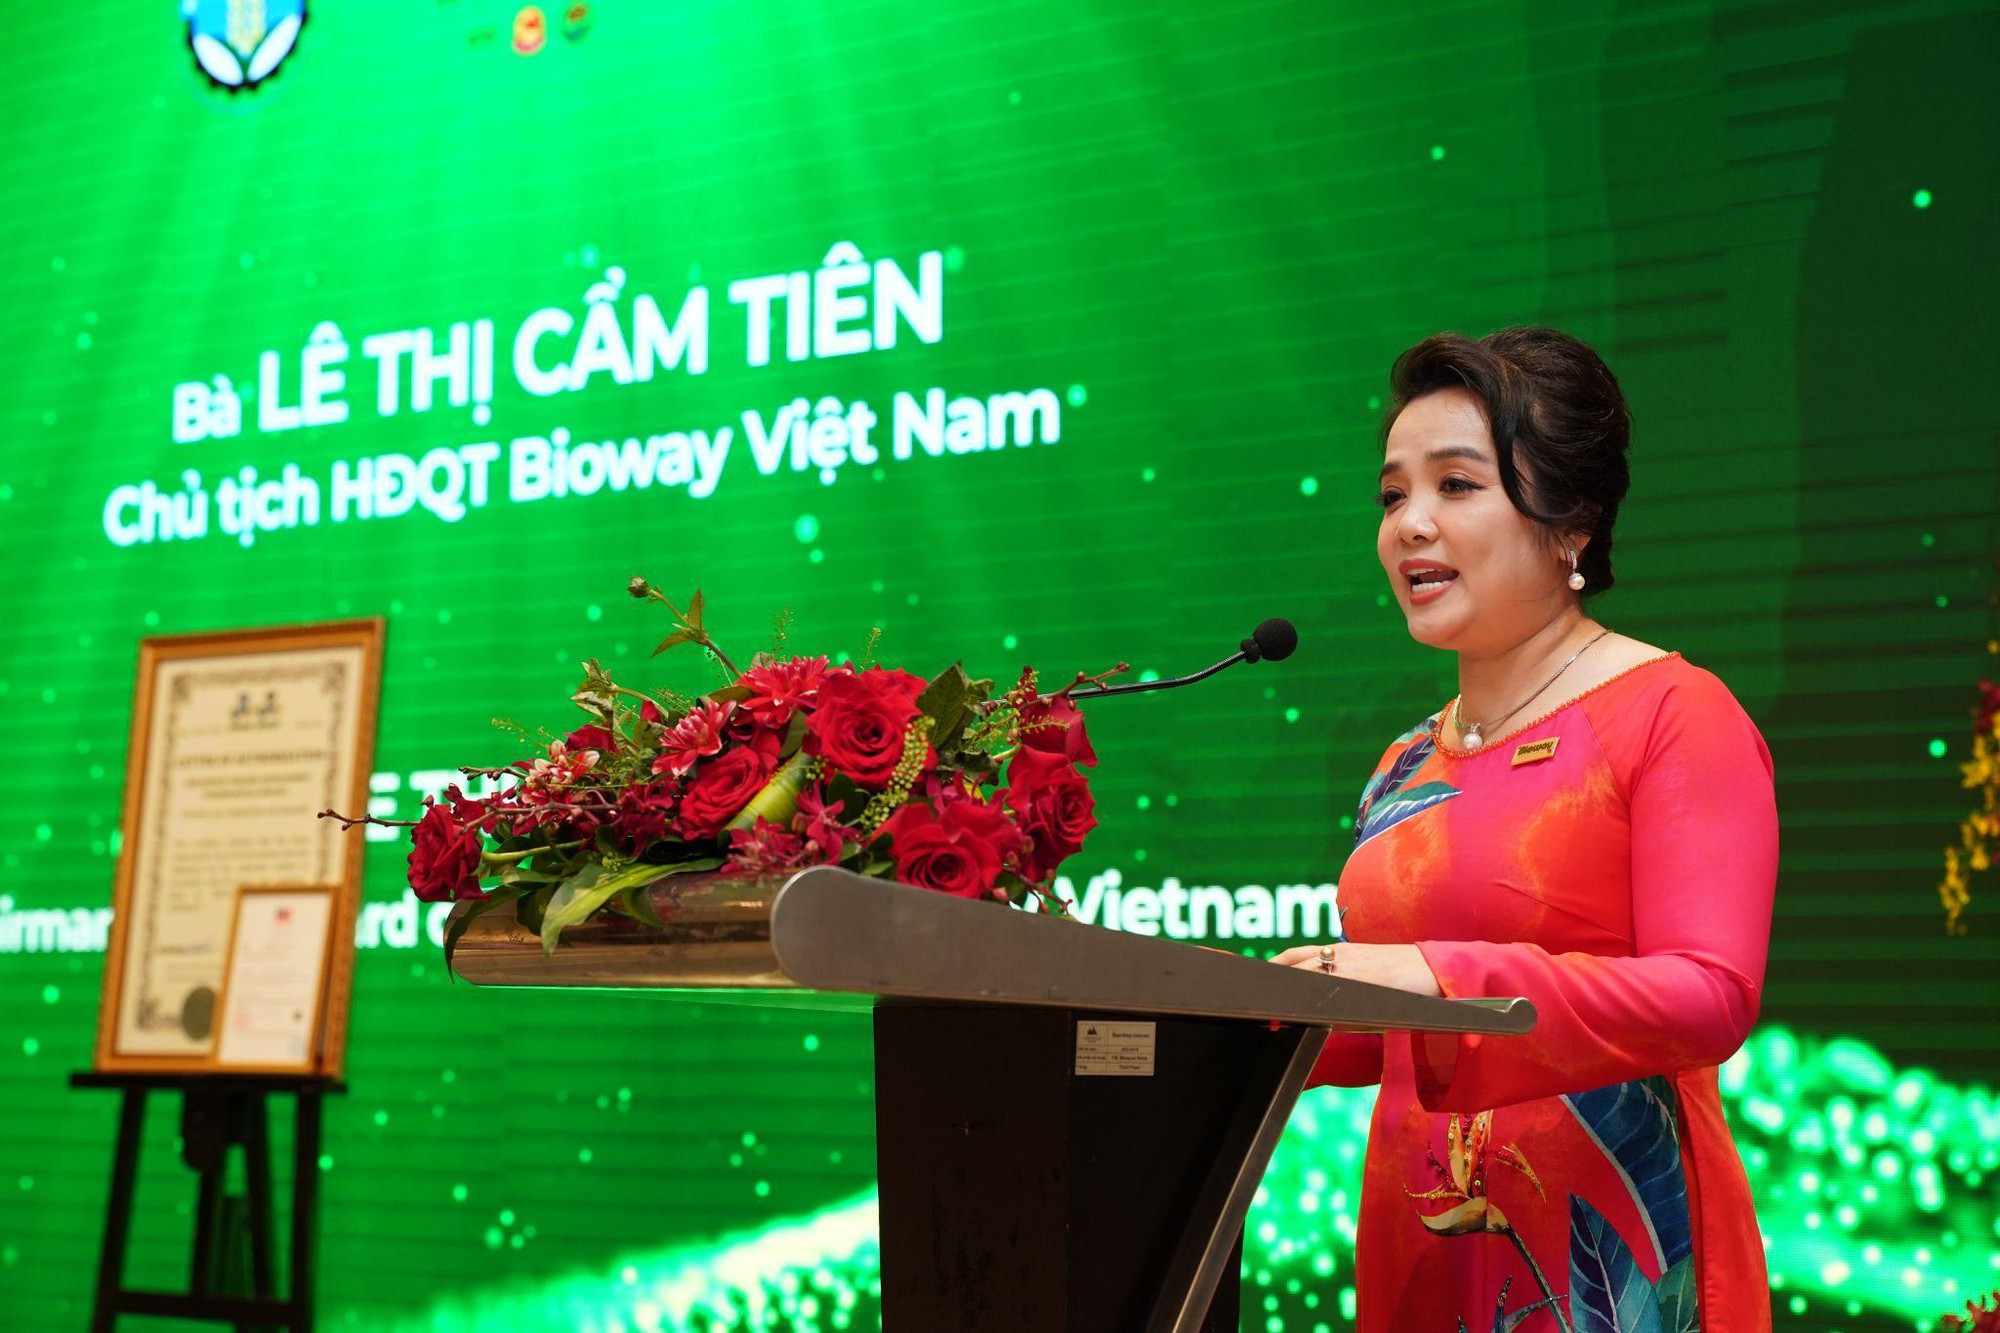 Bioway Việt Nam chú trọng thúc đẩy kinh tế tuần hoàn trong nông nghiệp hướng đến tăng trưởng xanh - Ảnh 4.